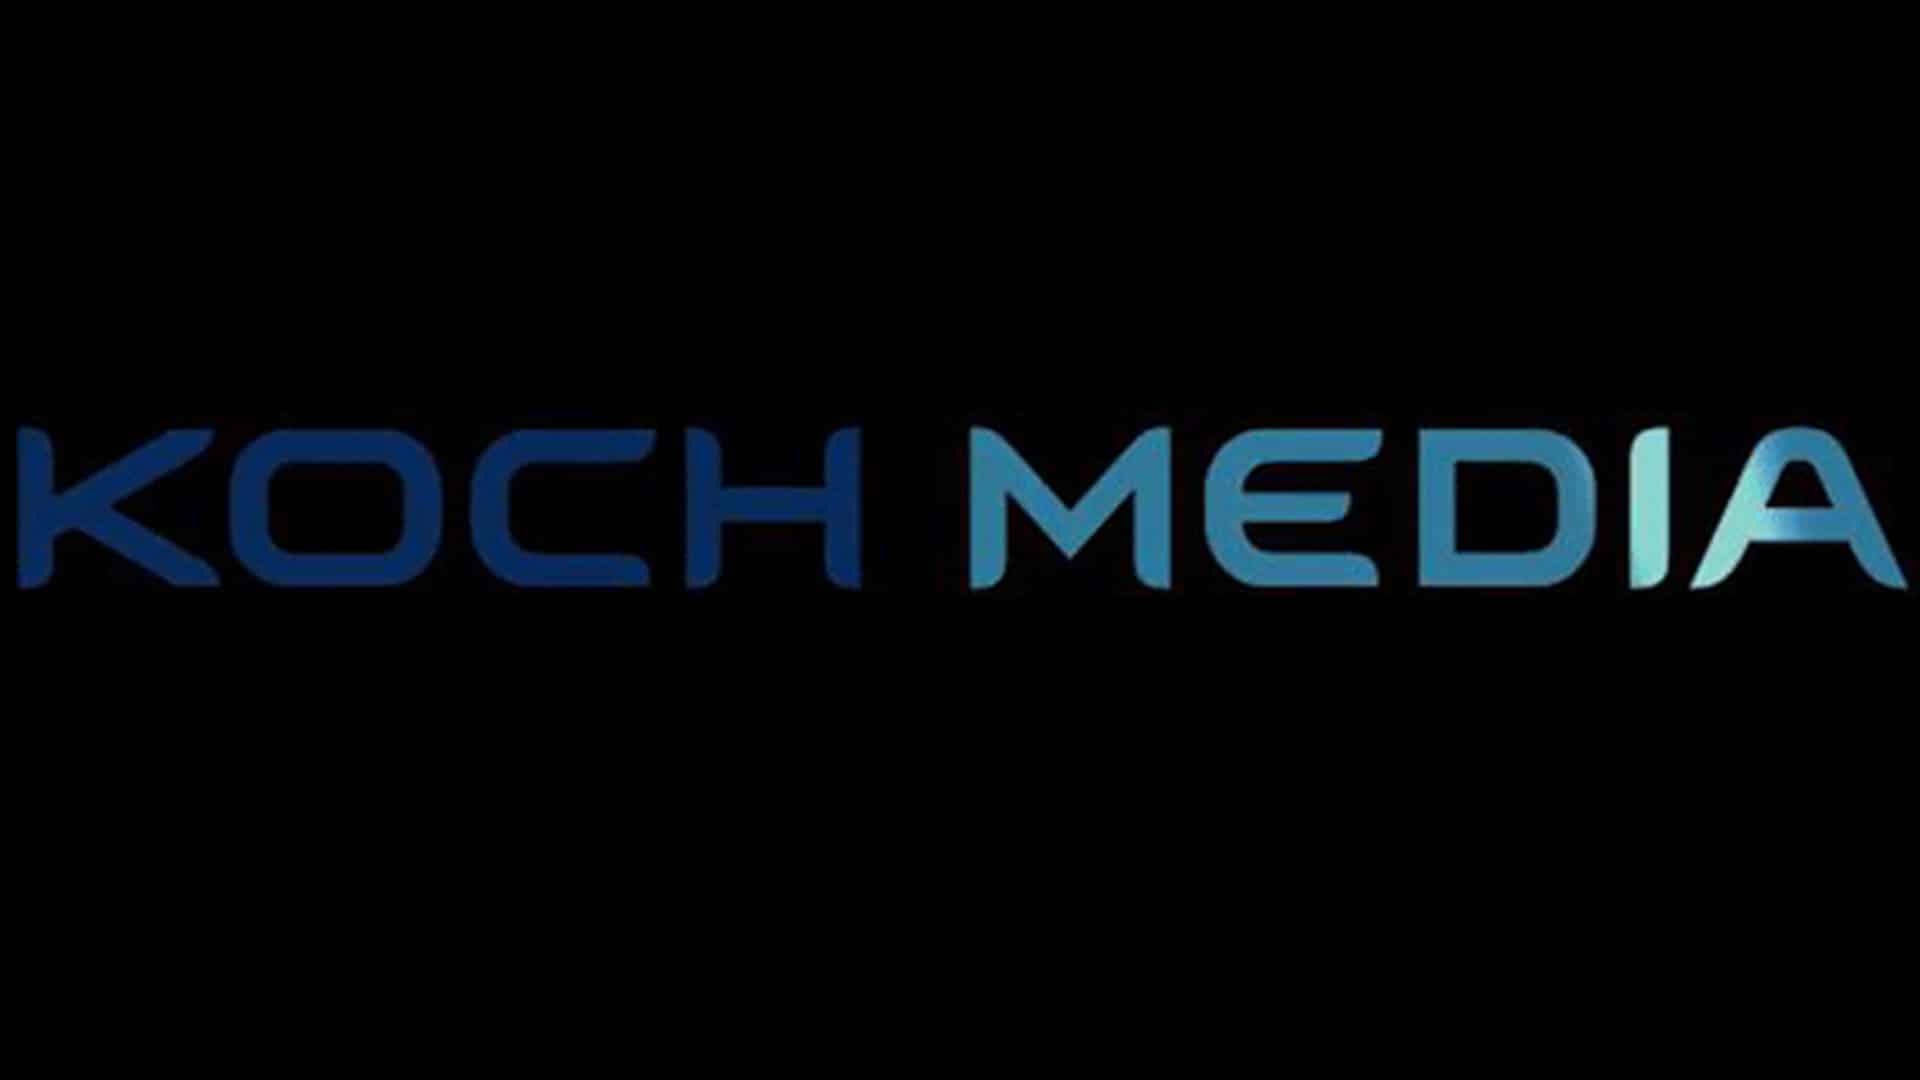 Koch Films: la società acquisisce la casa di distribuzione KSM GmbH